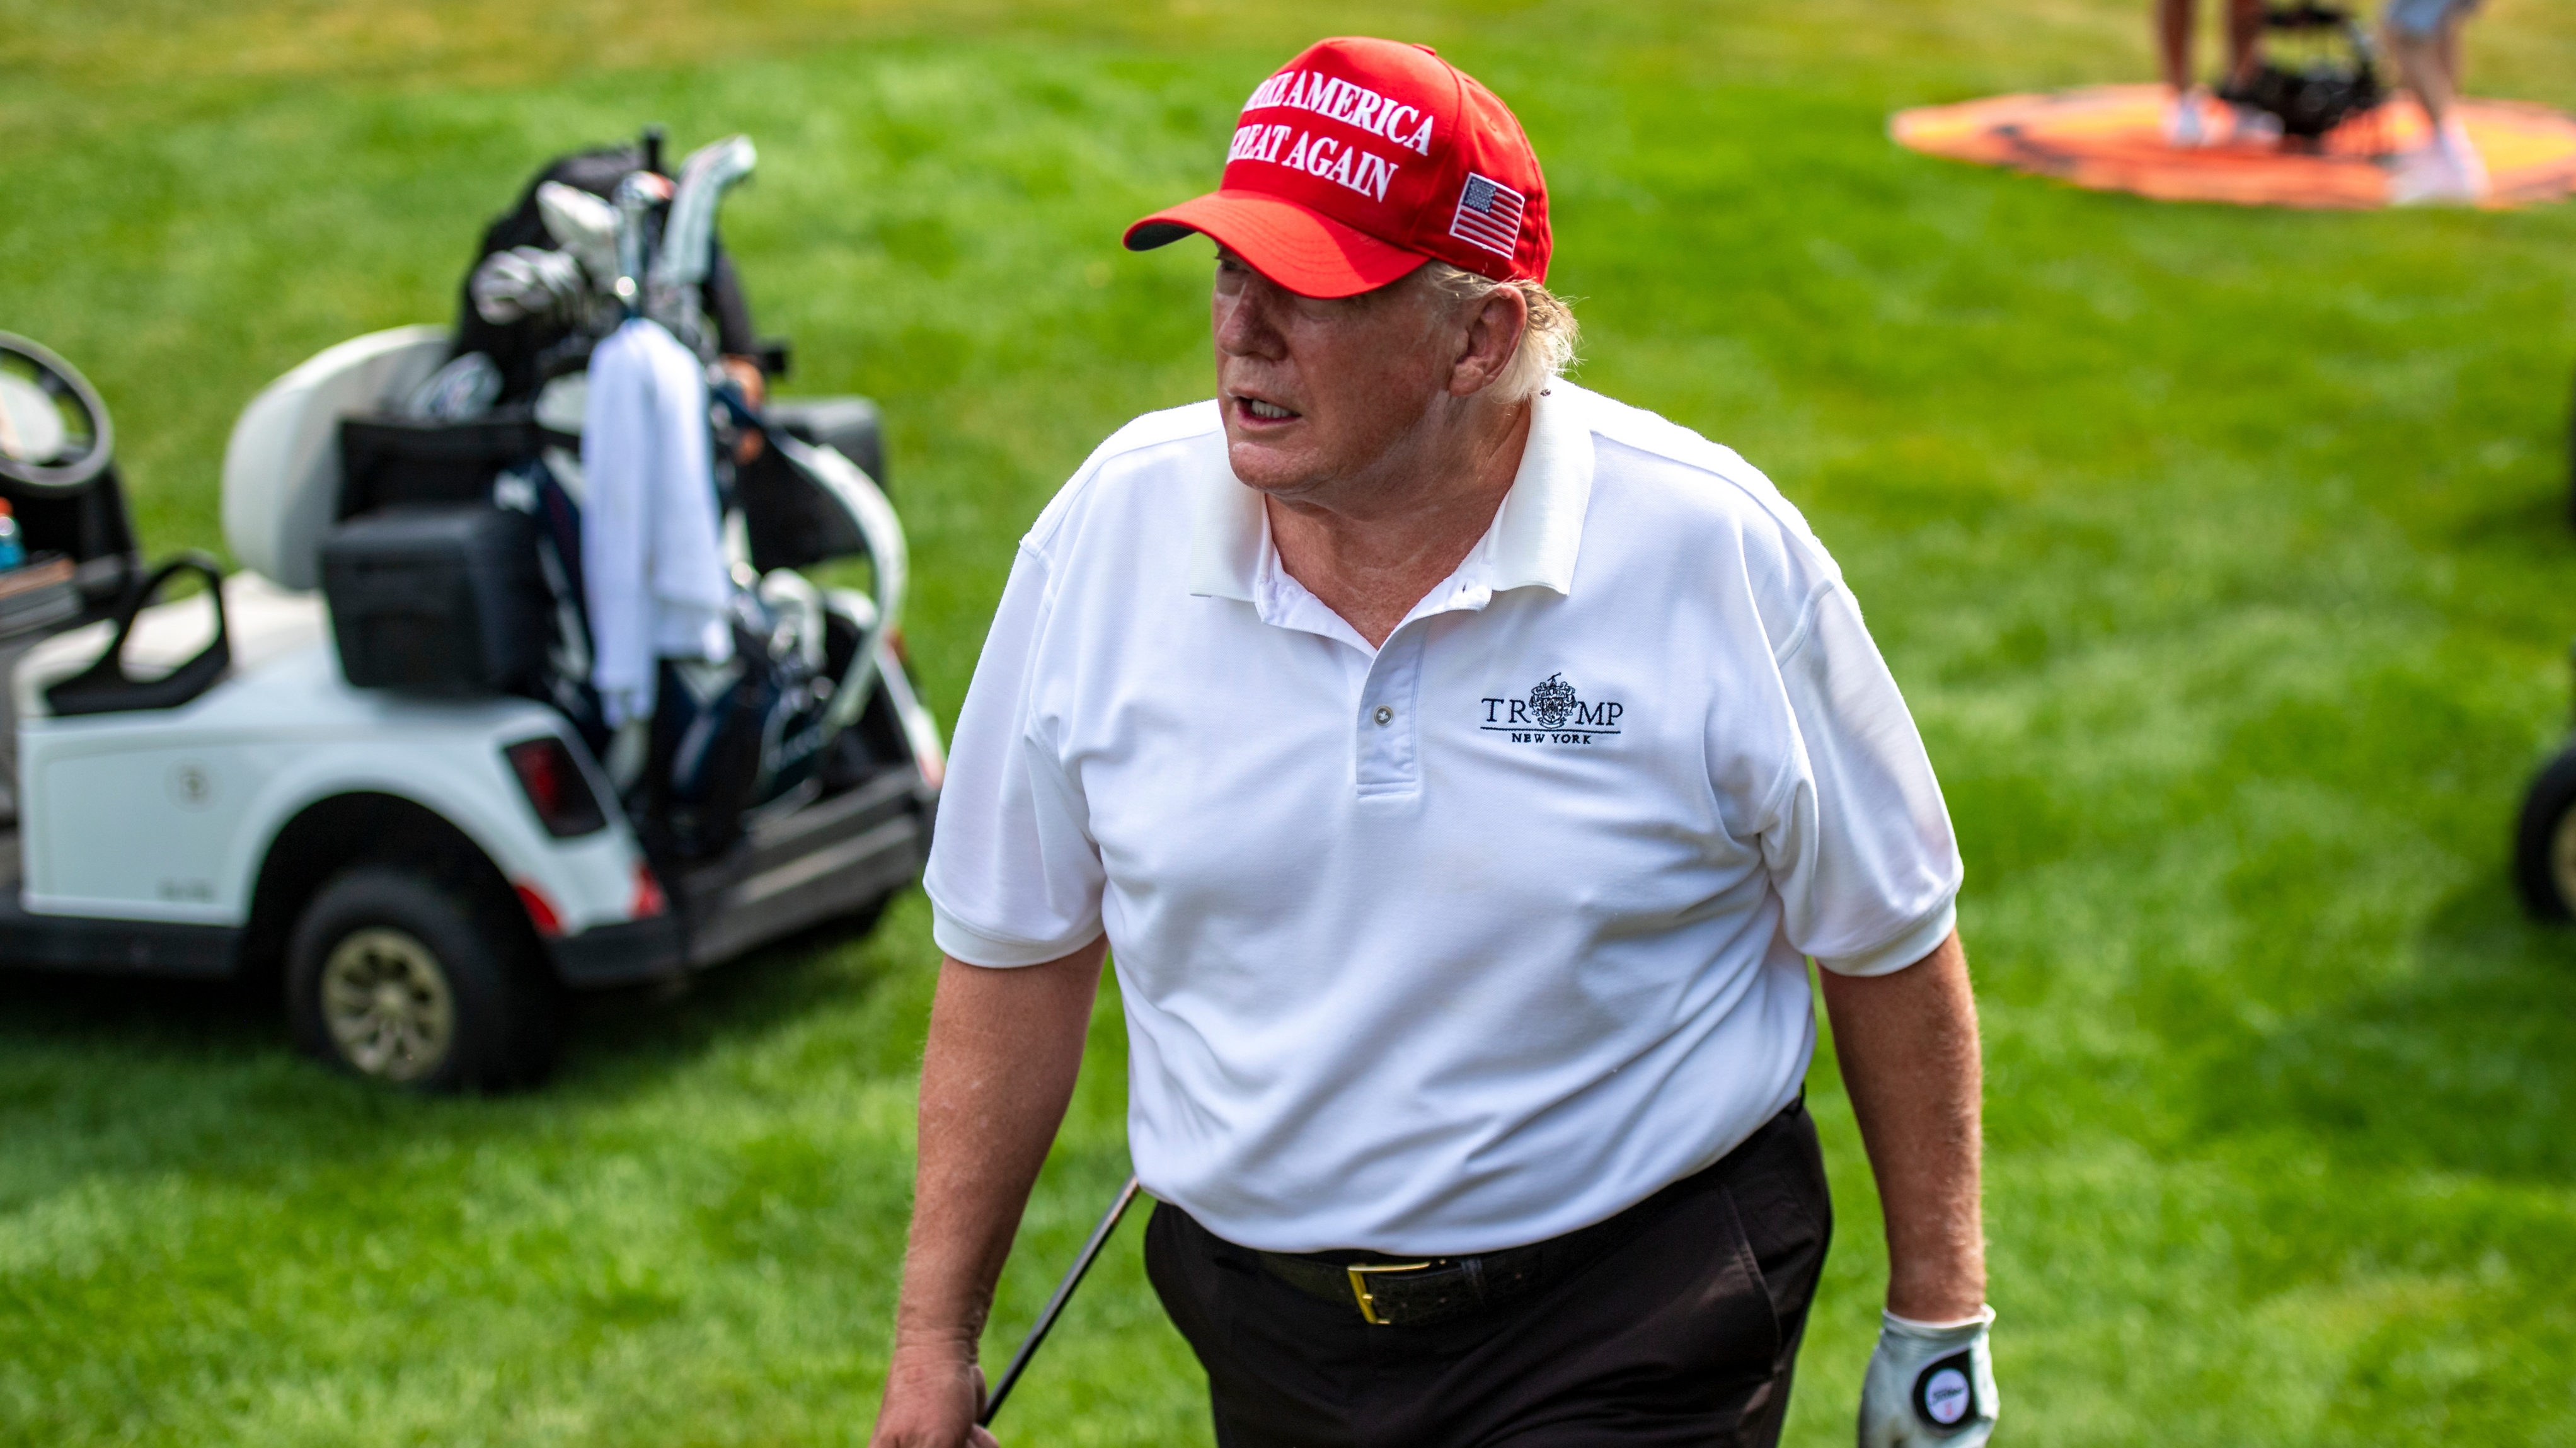 L’ancien président Donald Trump explique son soutien à LIV Golf